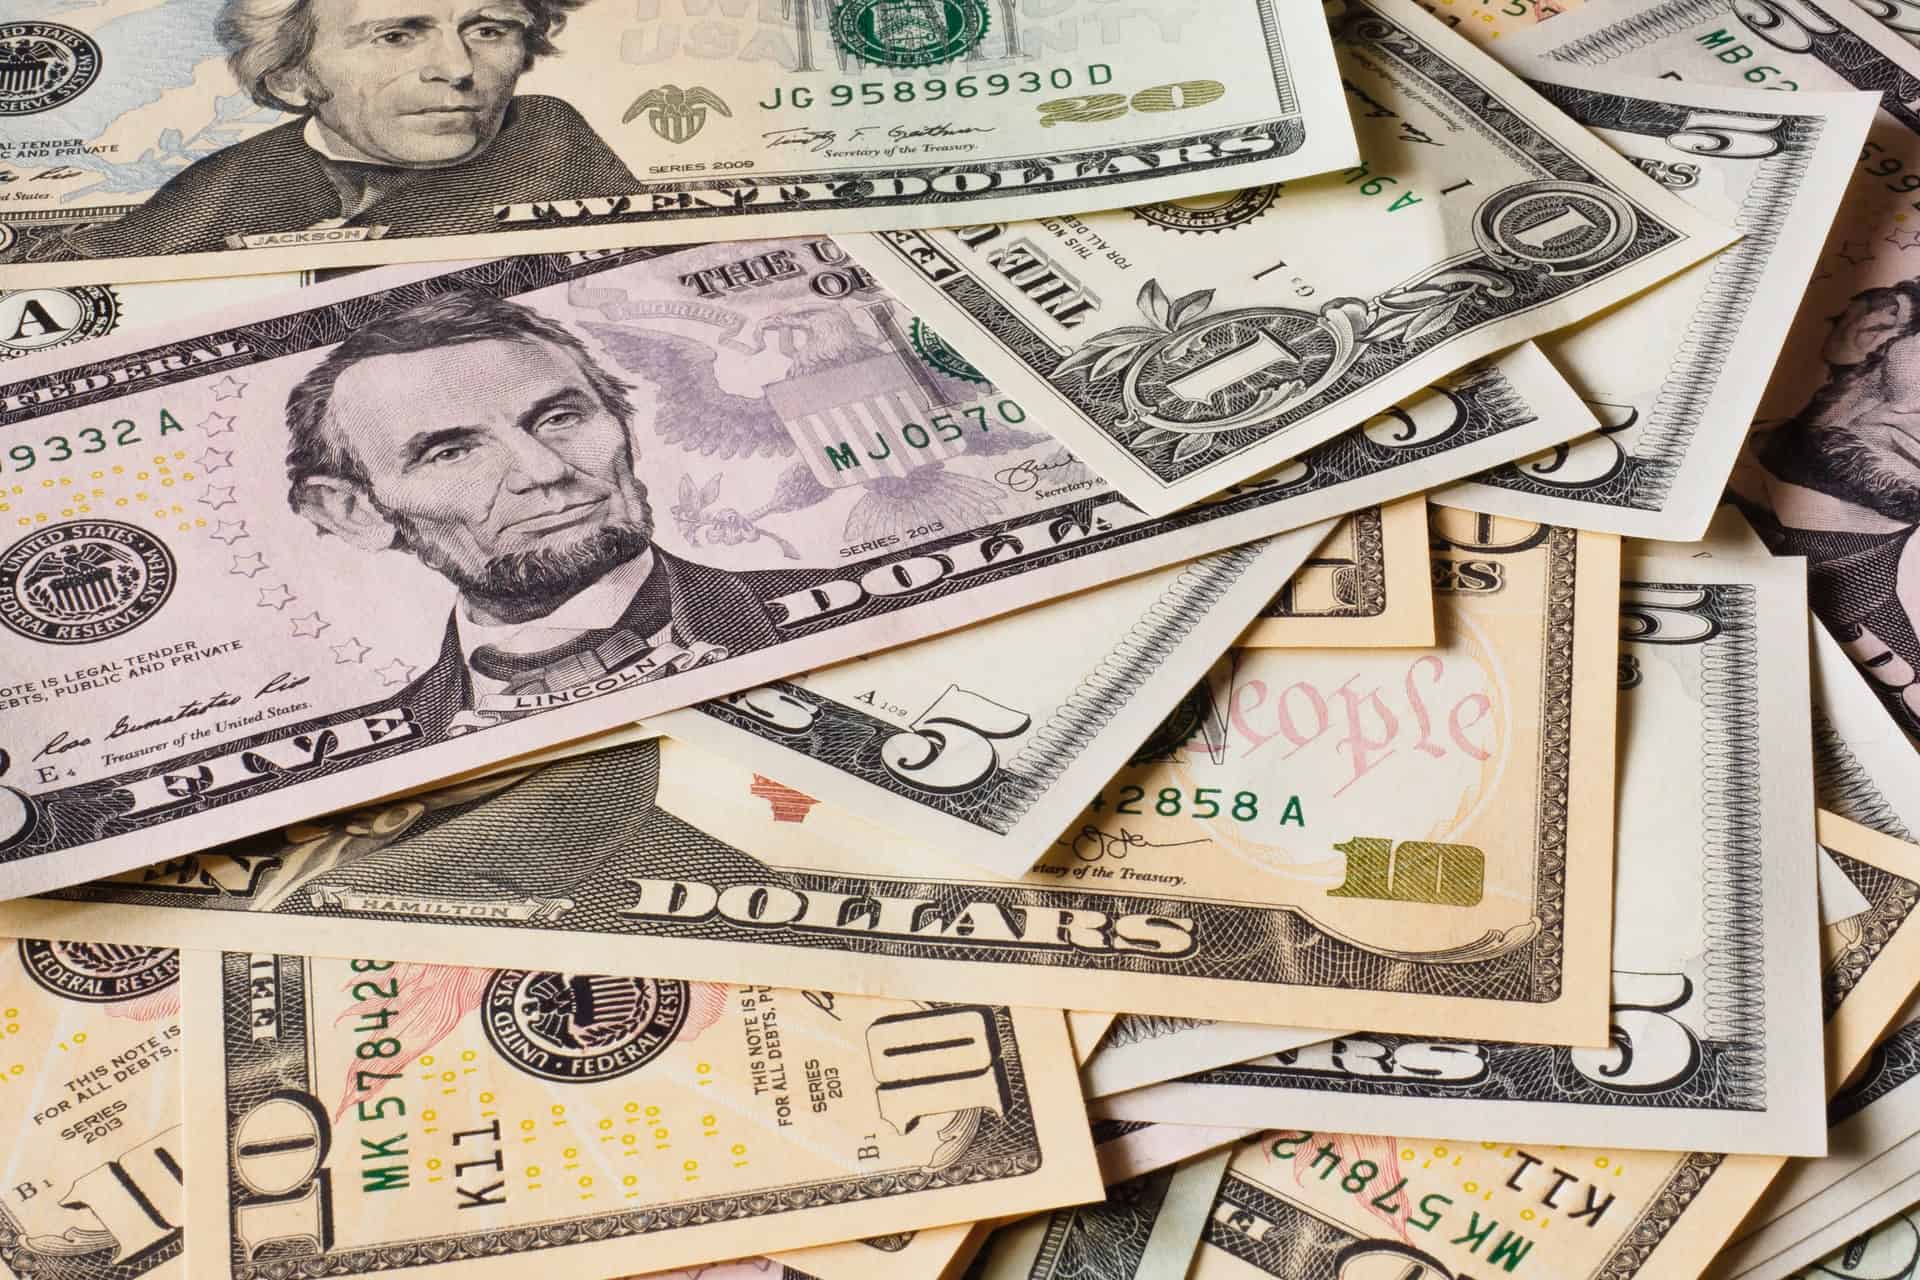 Money around the world — Part 3: Dollar bill investigation - MSU Extension